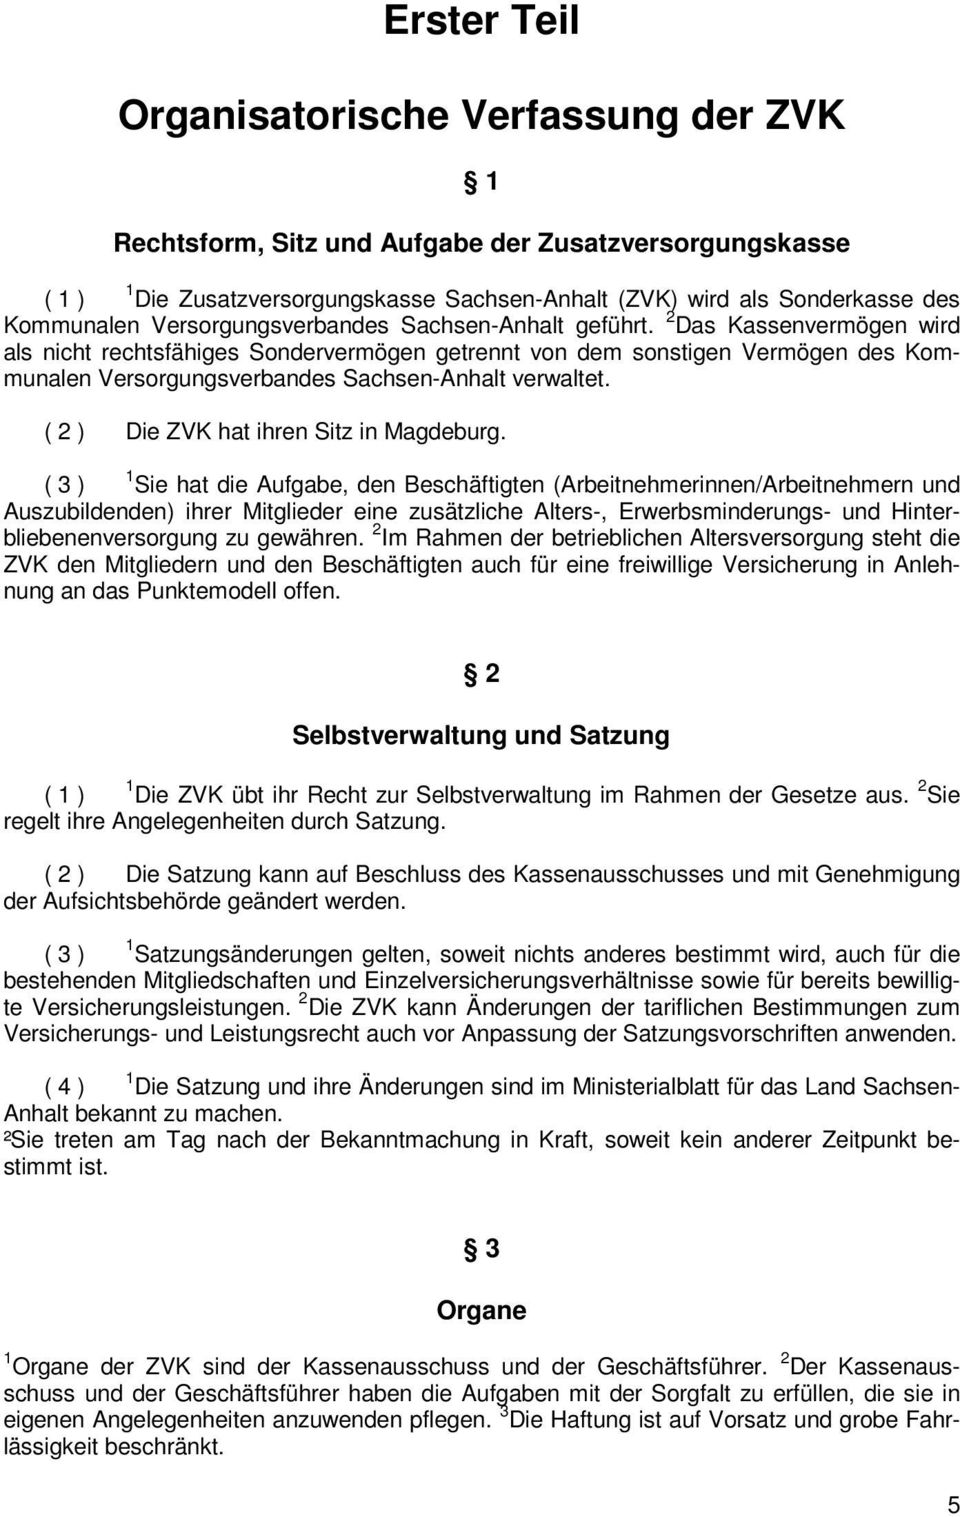 2 Das Kassenvermögen wird als nicht rechtsfähiges Sondervermögen getrennt von dem sonstigen Vermögen des Kommunalen Versorgungsverbandes Sachsen-Anhalt verwaltet.